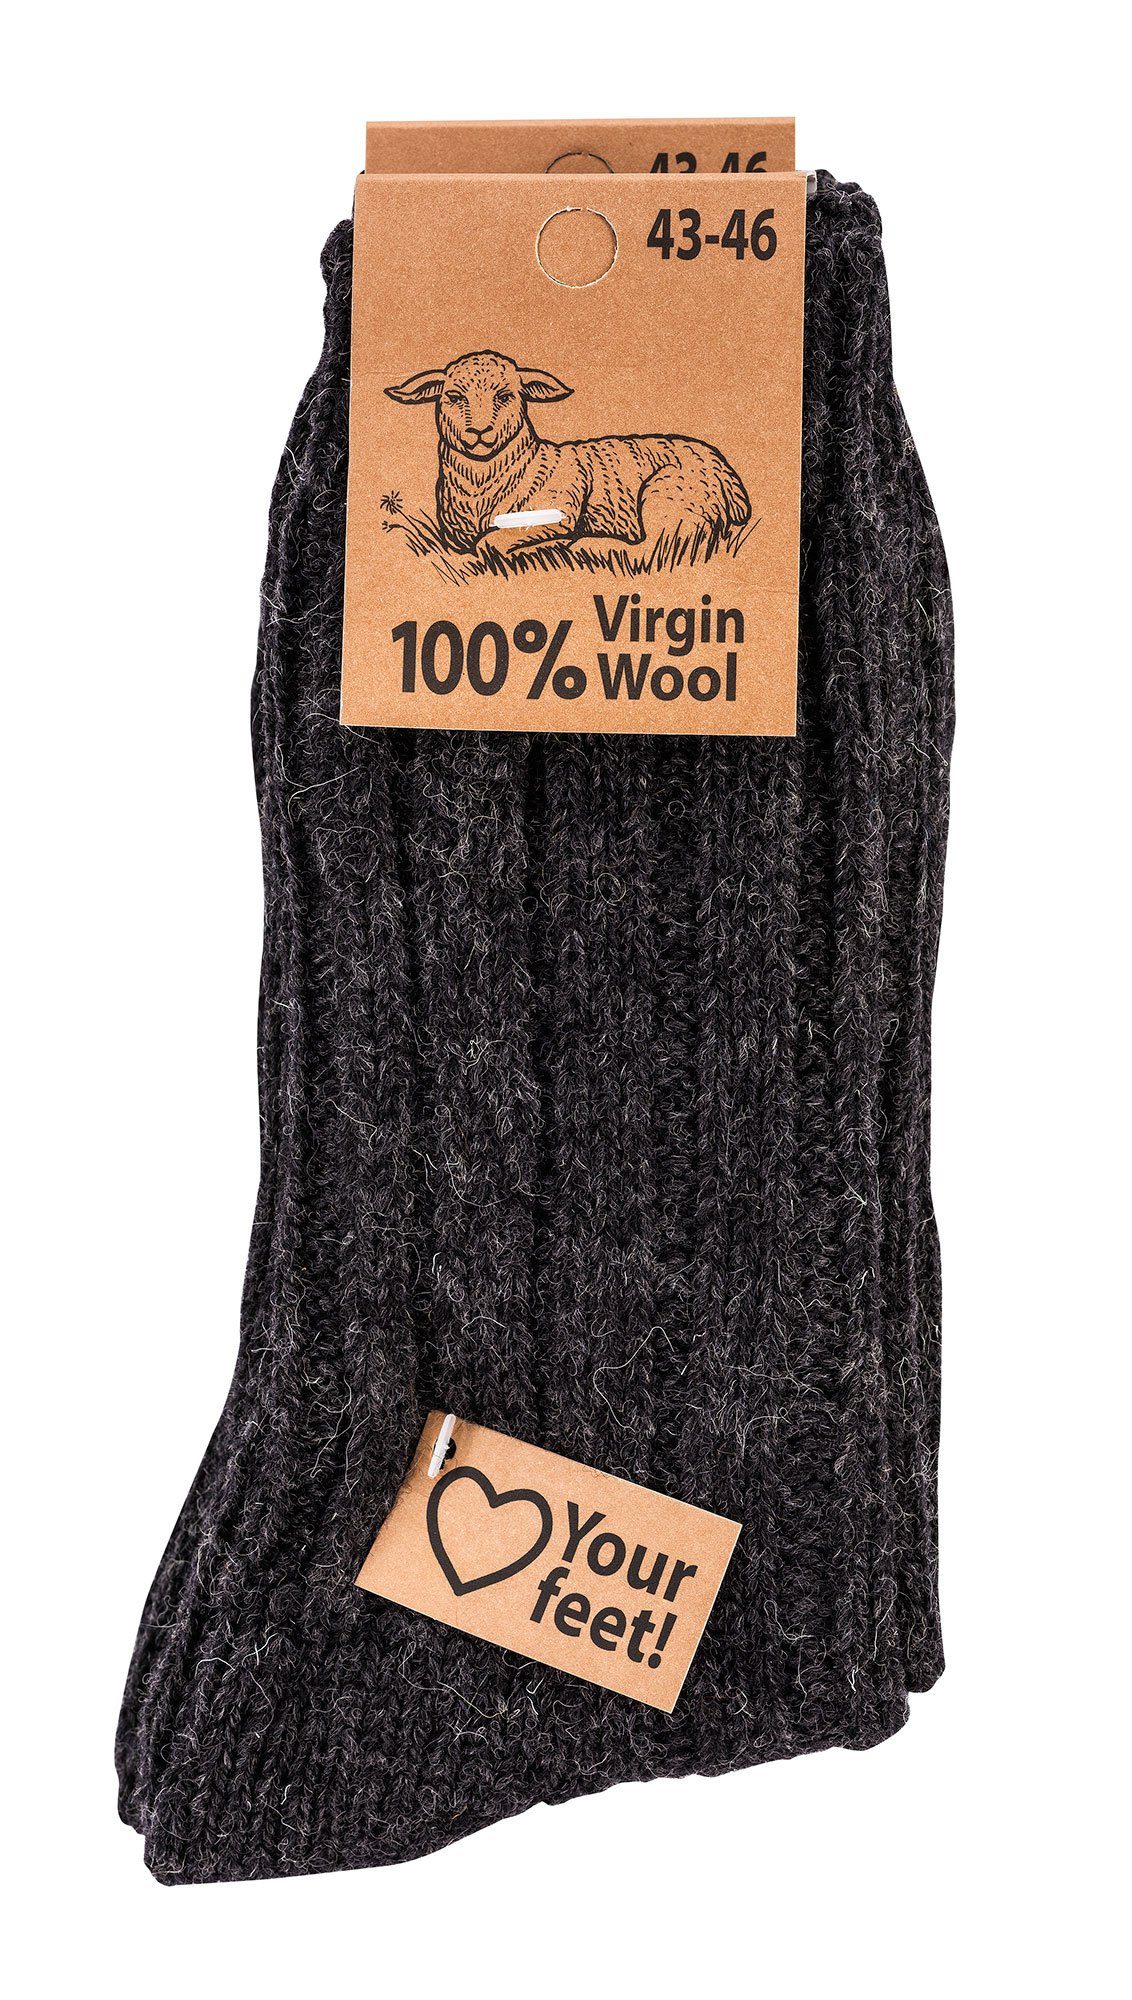 Socks 4 Fun Wowerat Warme 100% Paar) Grobstrick Socken Wollsocken Schafwolle (2 anthrazit Wool" "Virgin